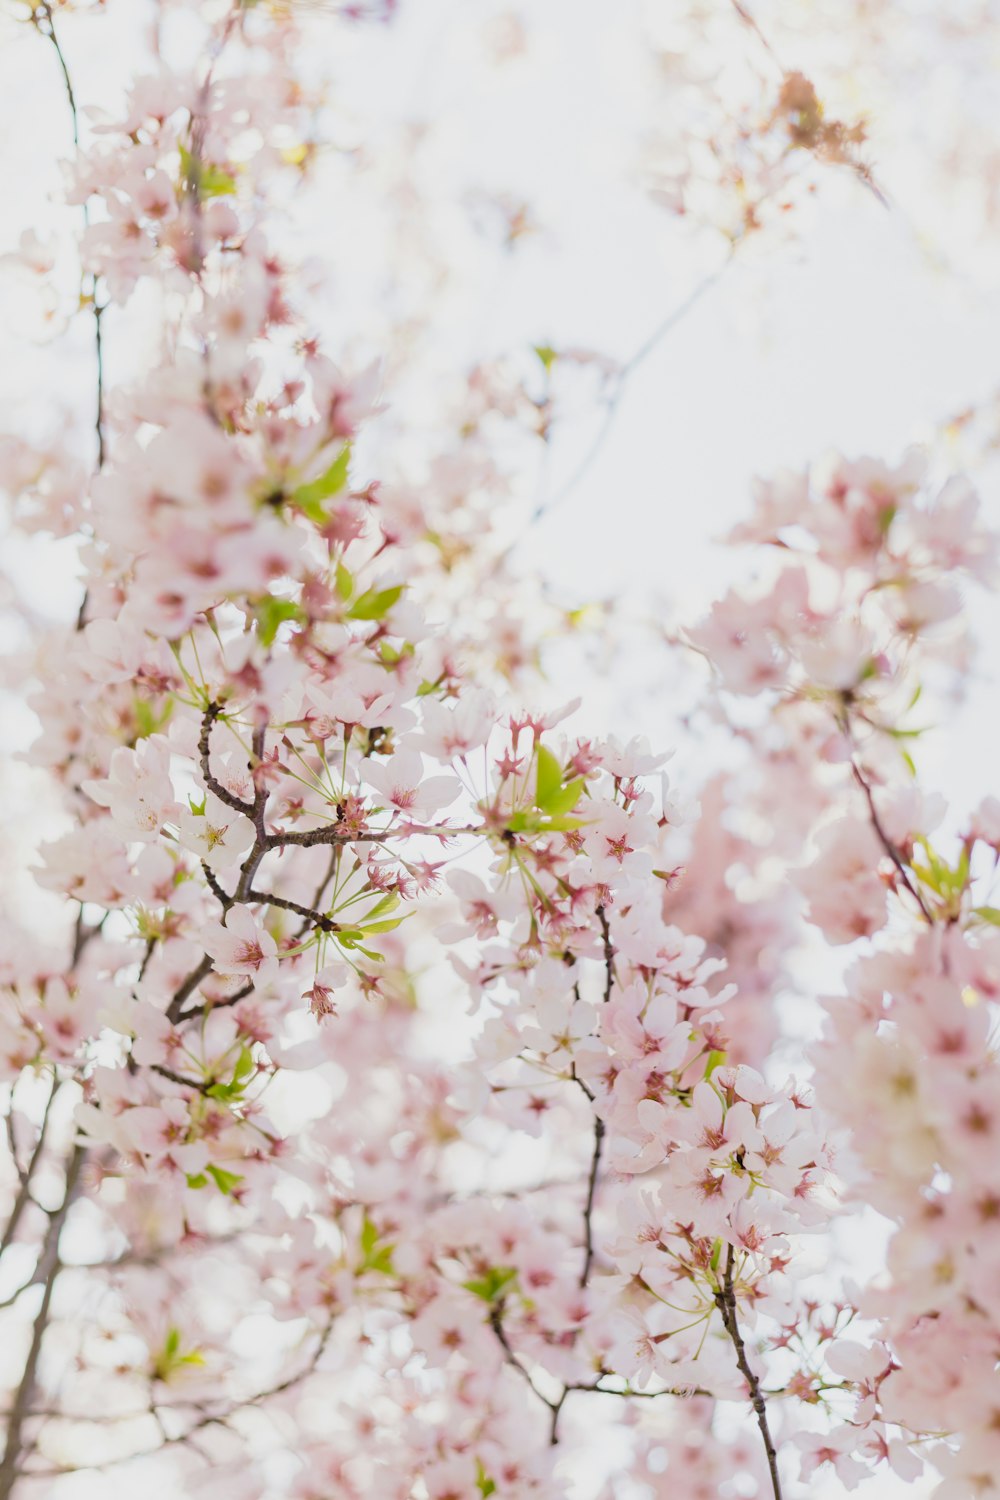 クローズ アップ写真でピンクの桜の写真 Unsplashの無料桜の花写真